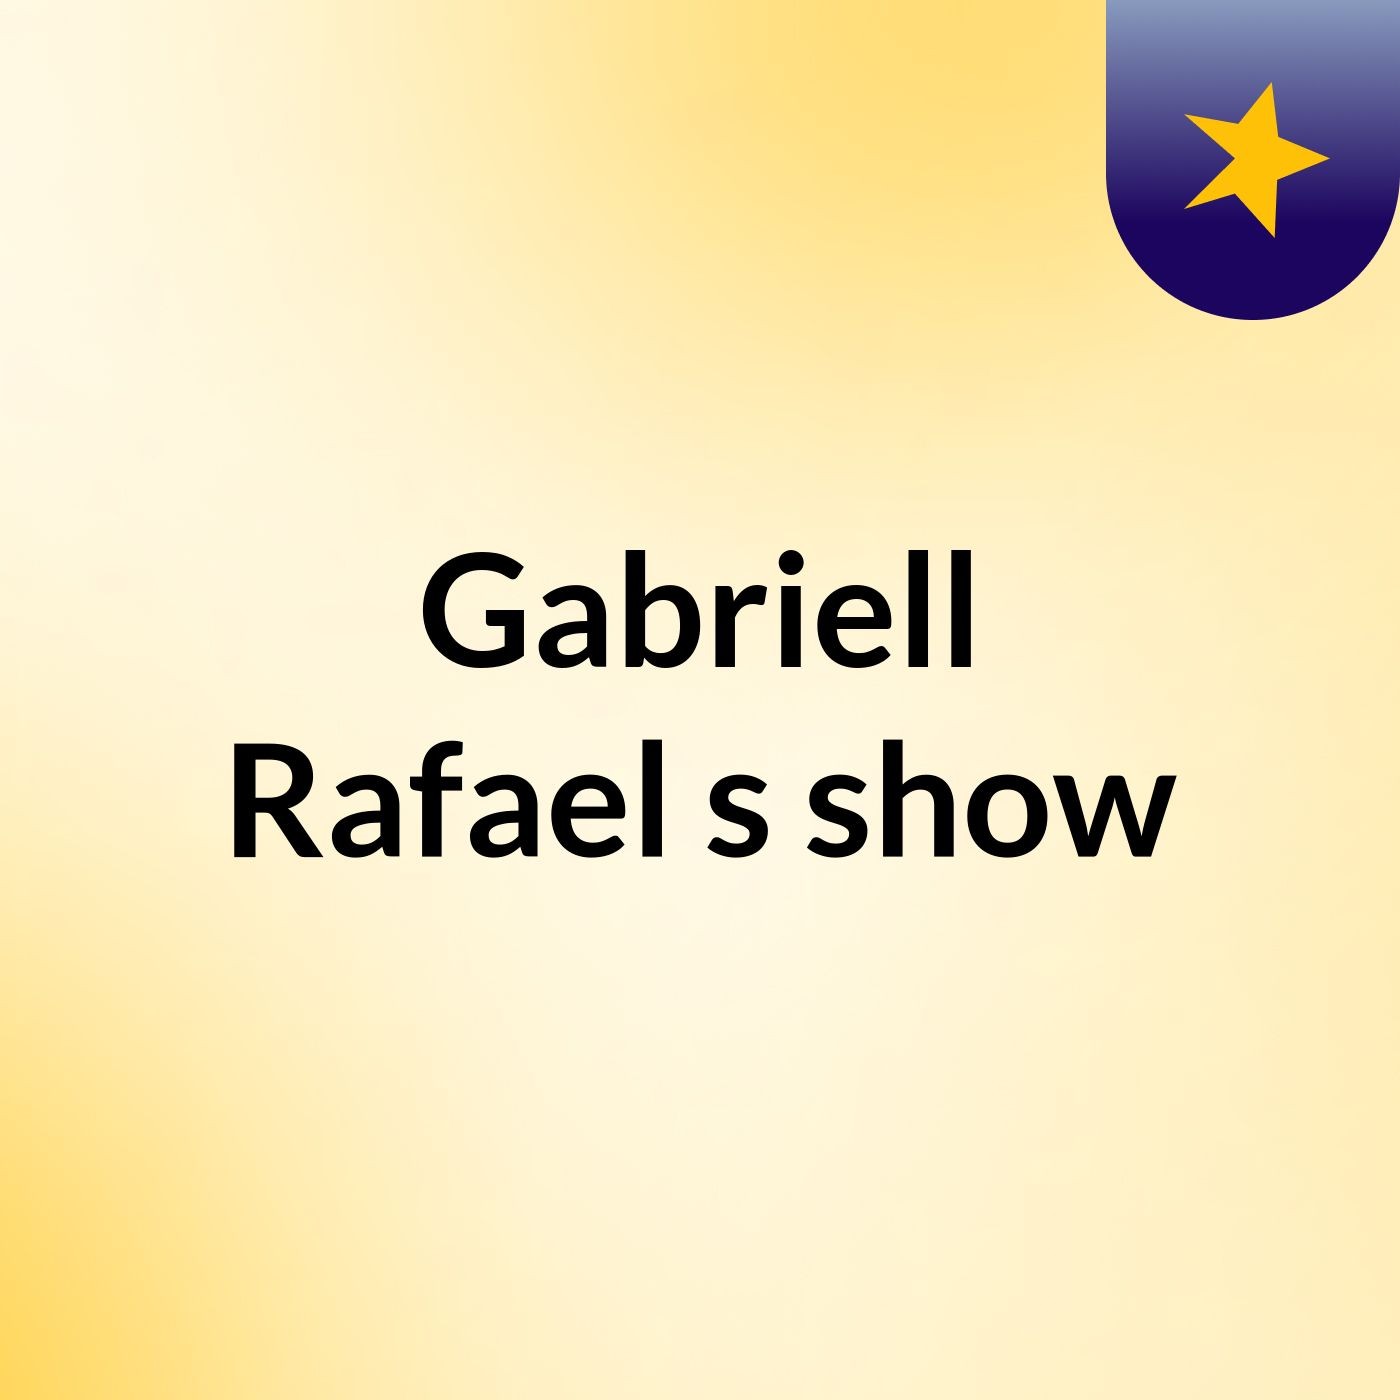 Gabriell Rafael's show